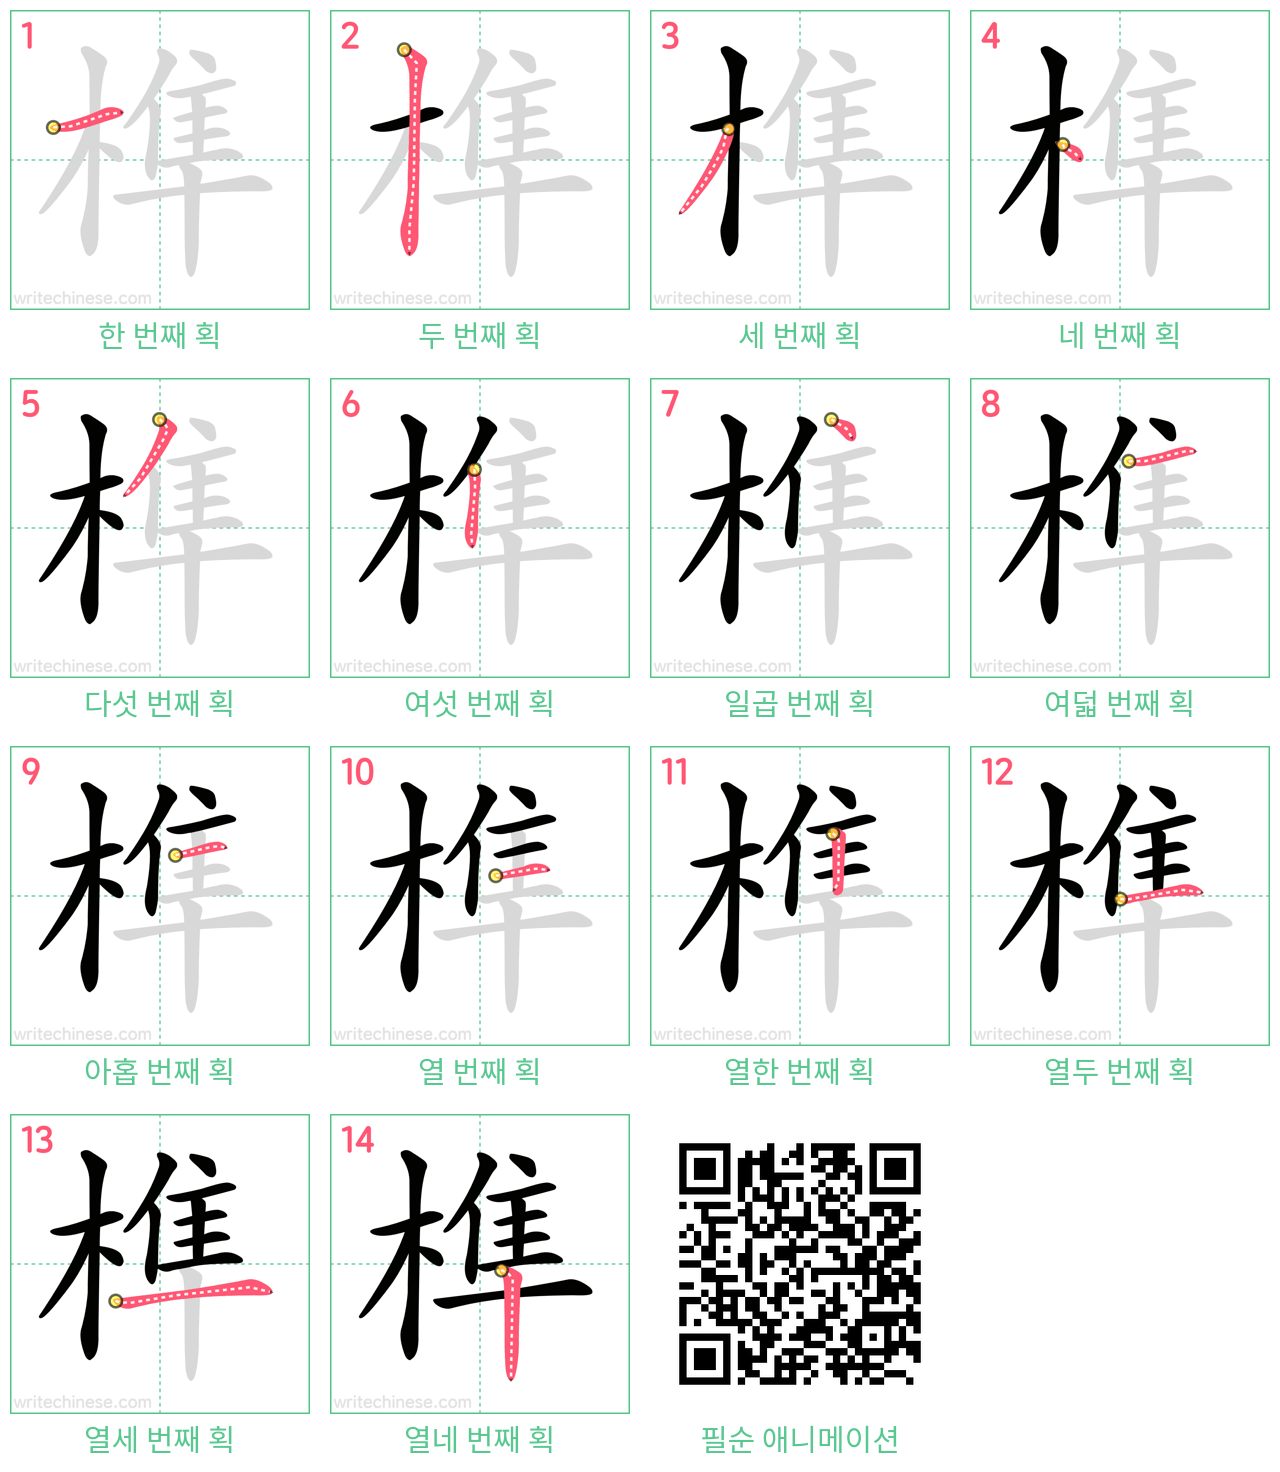 榫 step-by-step stroke order diagrams